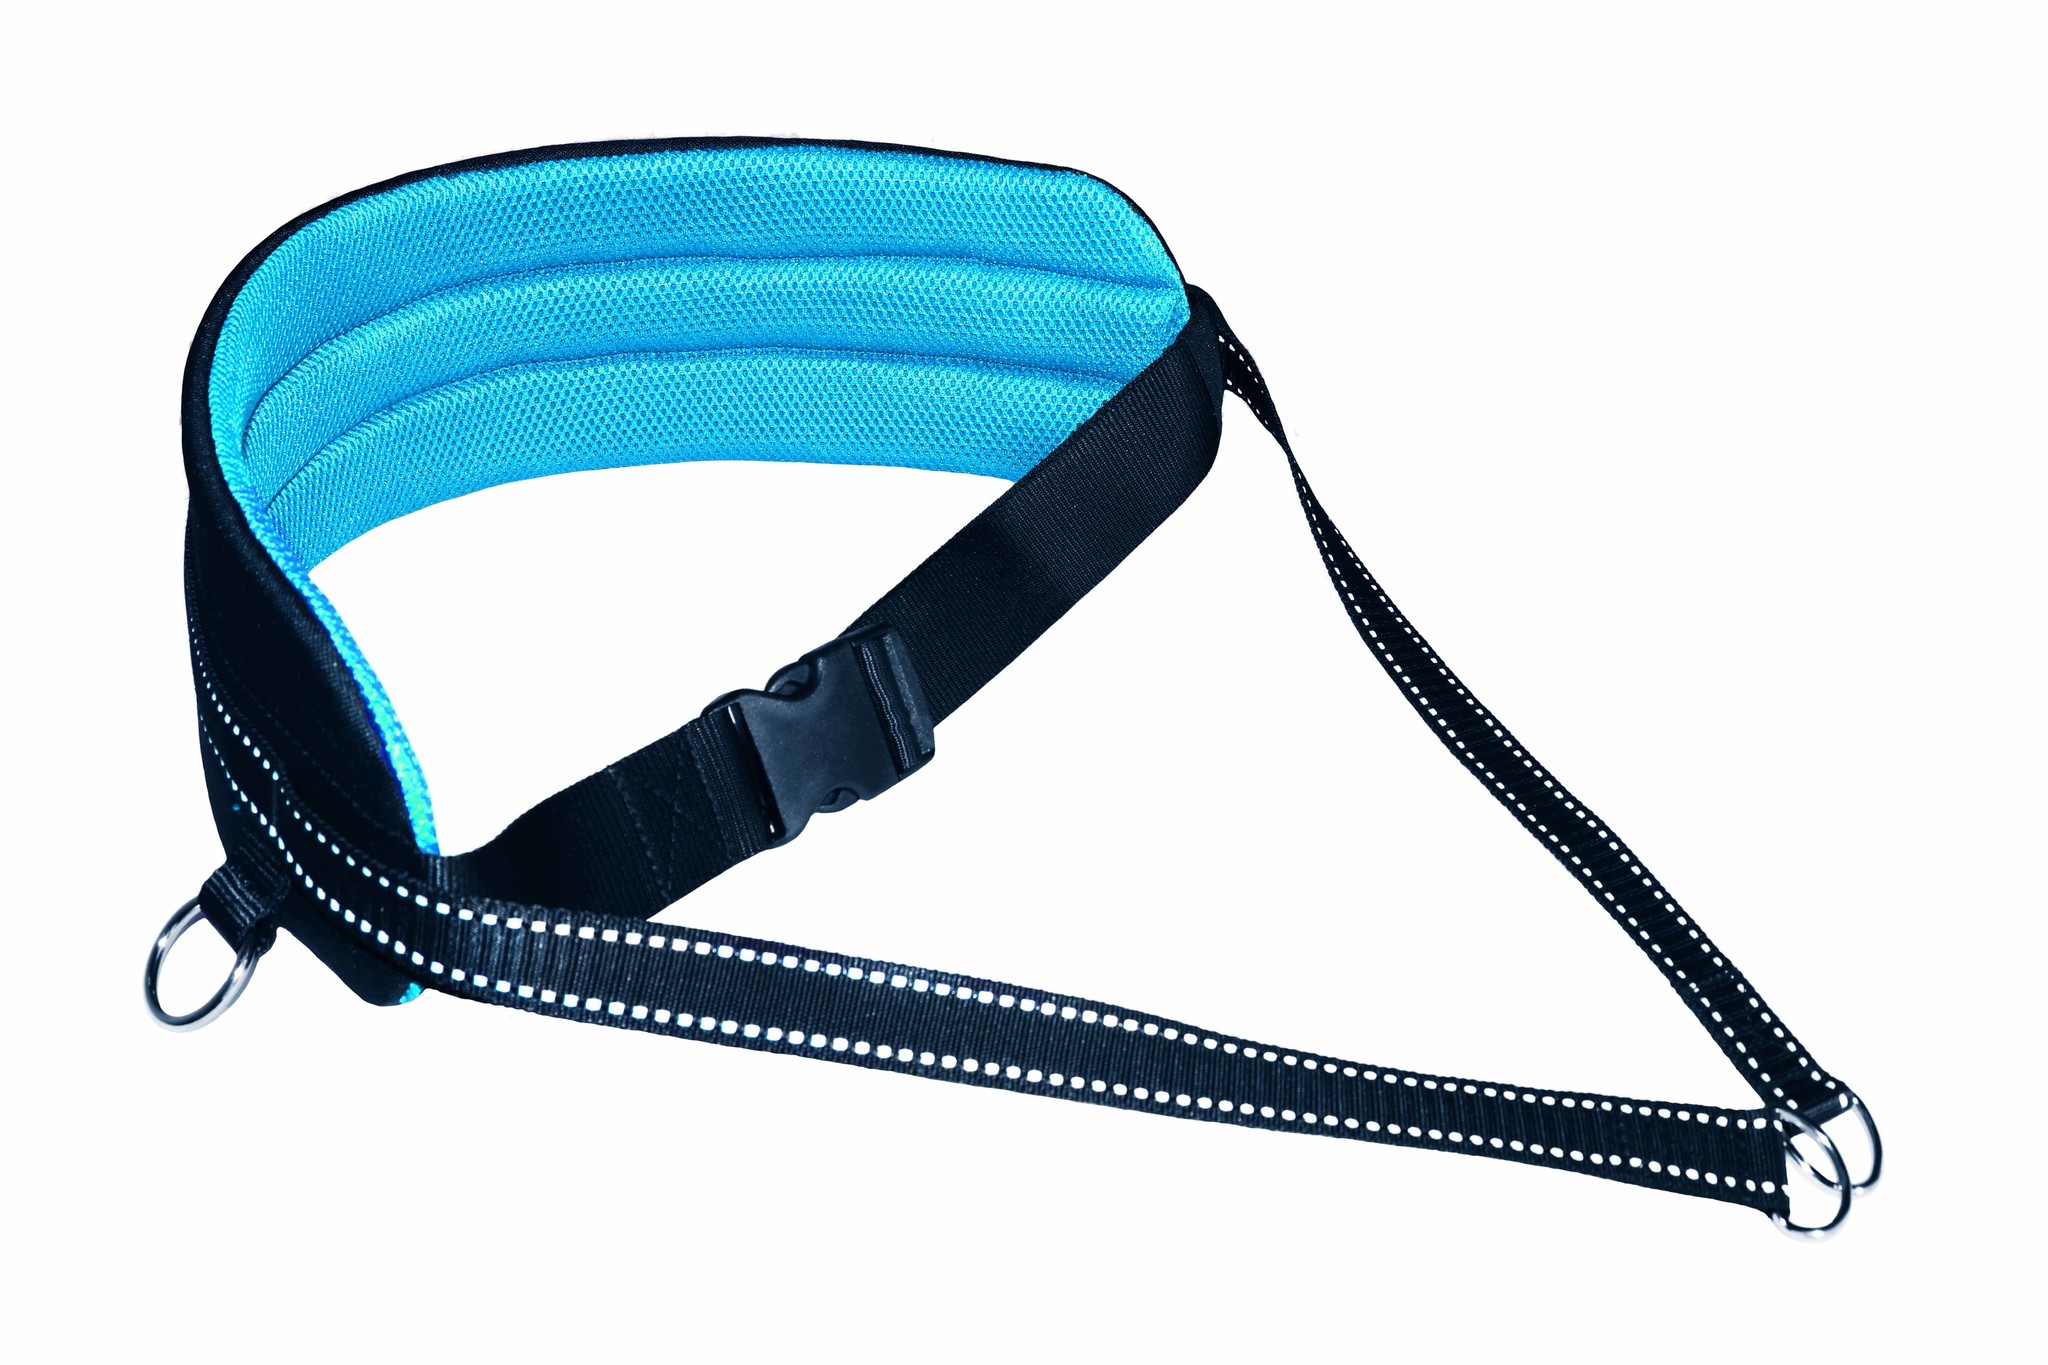 LASALINE LASALINE Handsfree Canicross dog walking running jogging waist belt - bleu clair